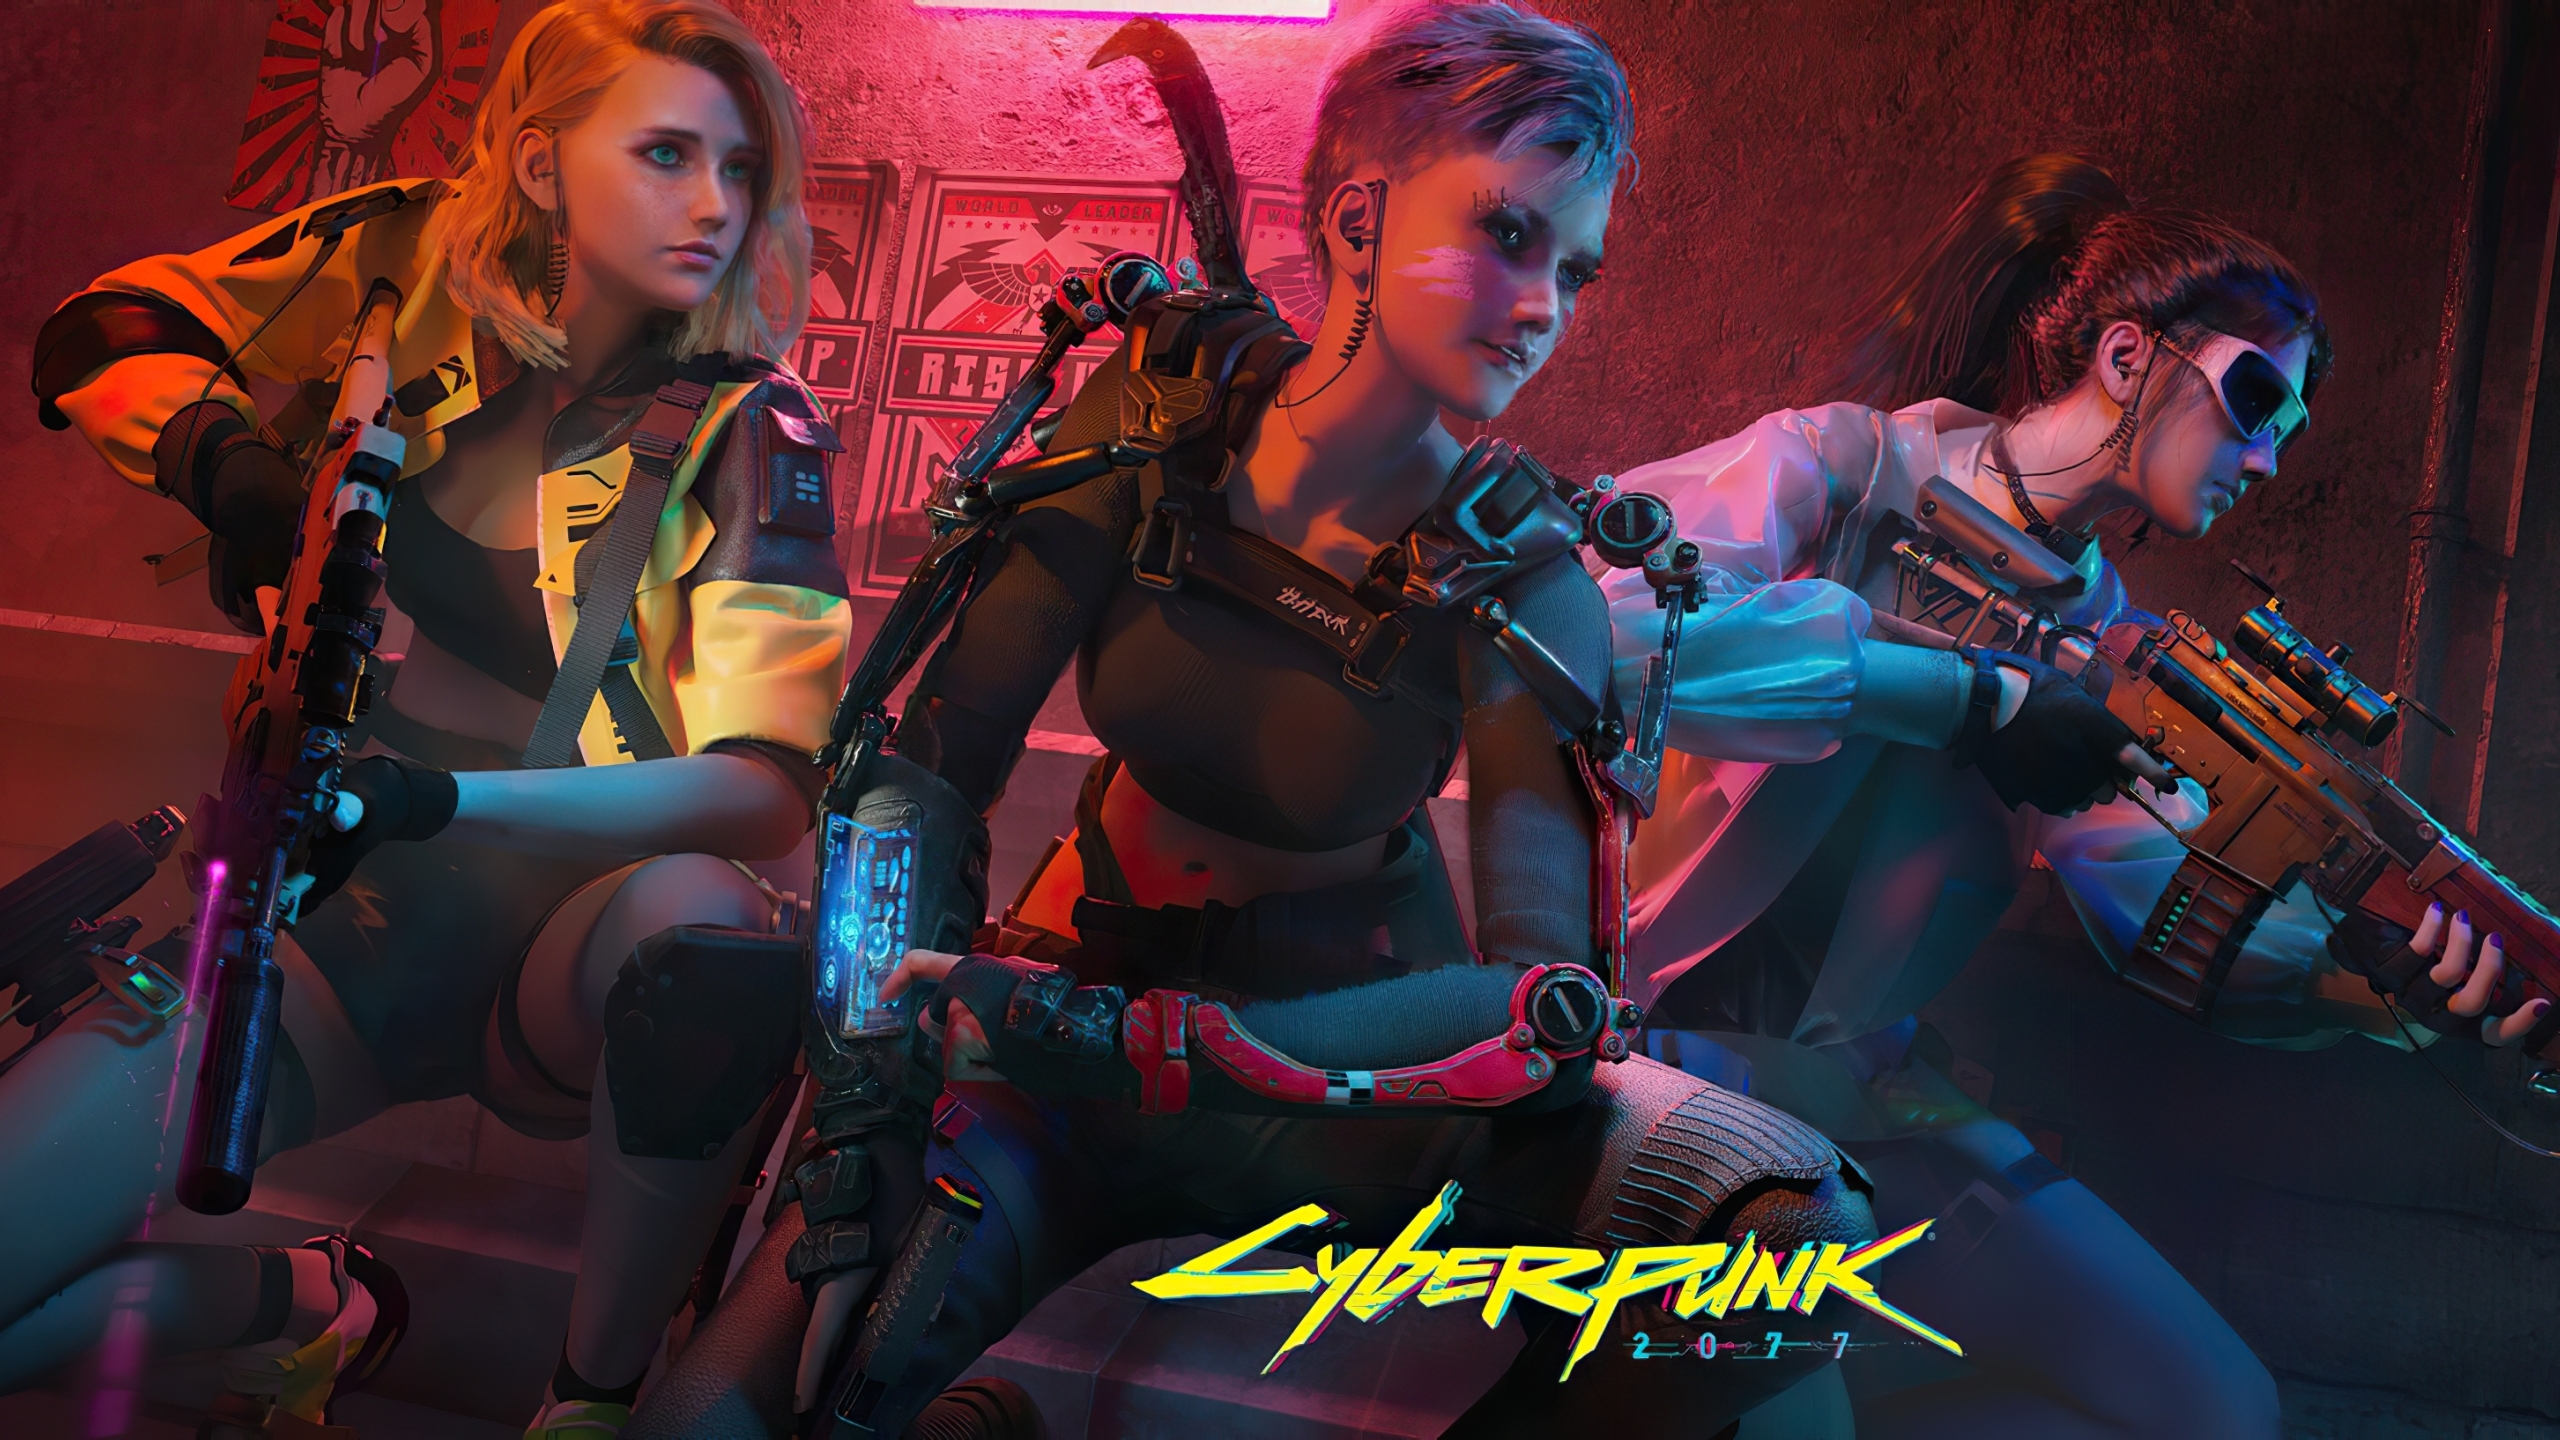 2560x1440 Cyberpunk 2077 Girl Team 1440p Resolution Wallpaper Hd Games